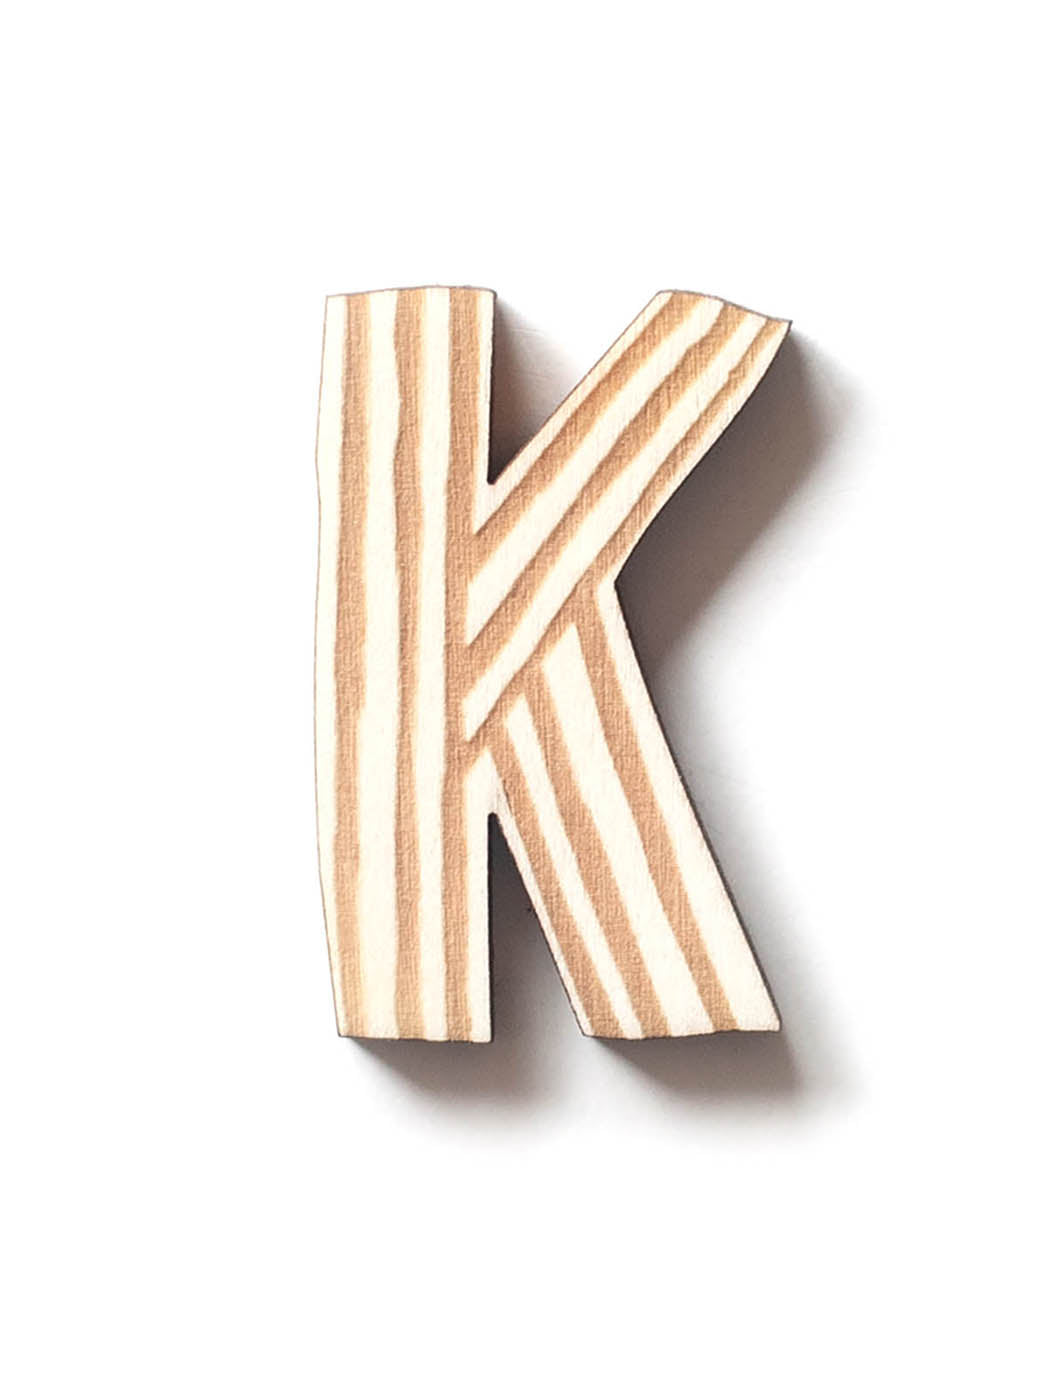 Holzbuchstabe K fürs Kinderzimmer mit Streifen schlicht